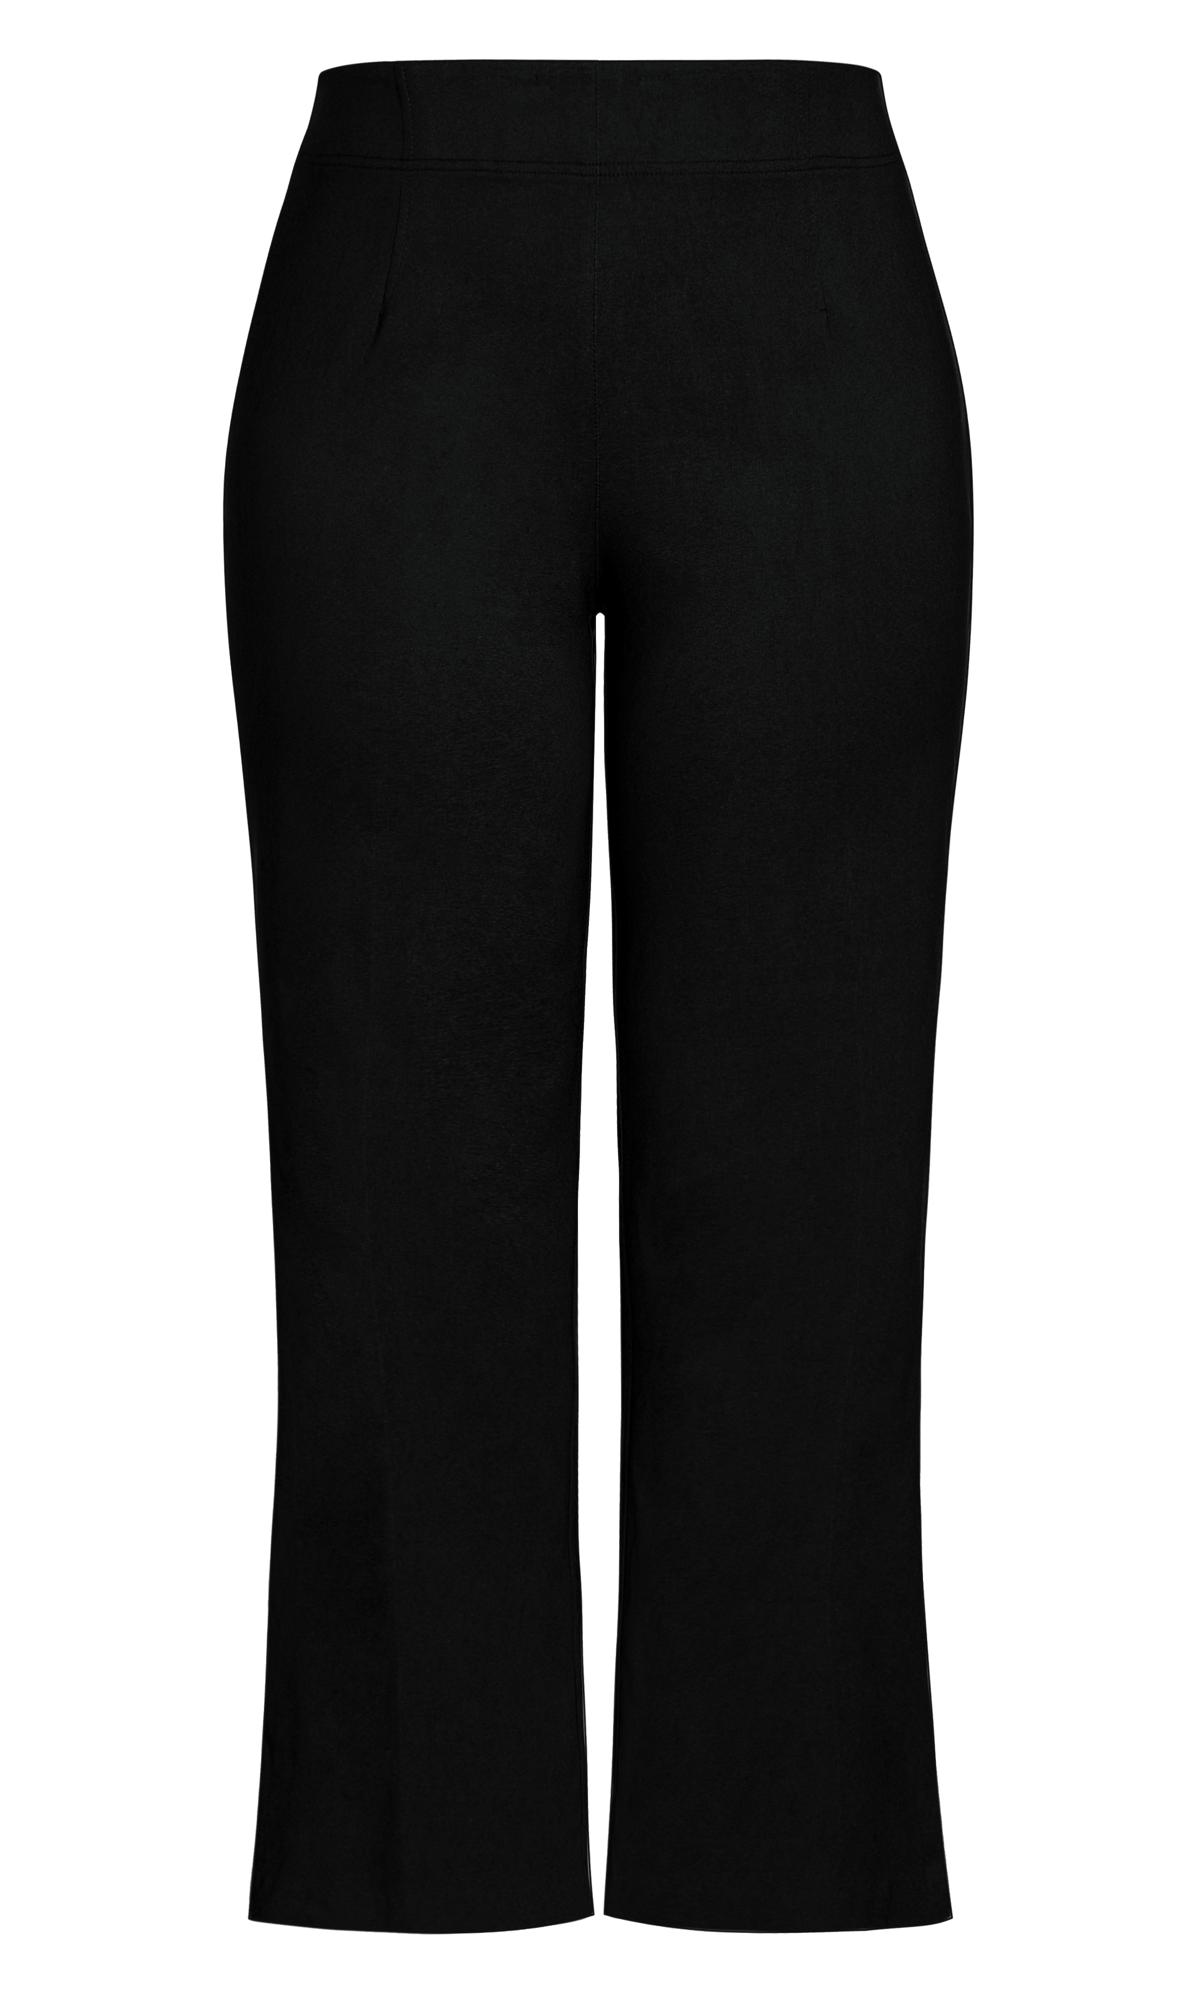 Femme Luxe high waist bootcut trouser in black | ASOS